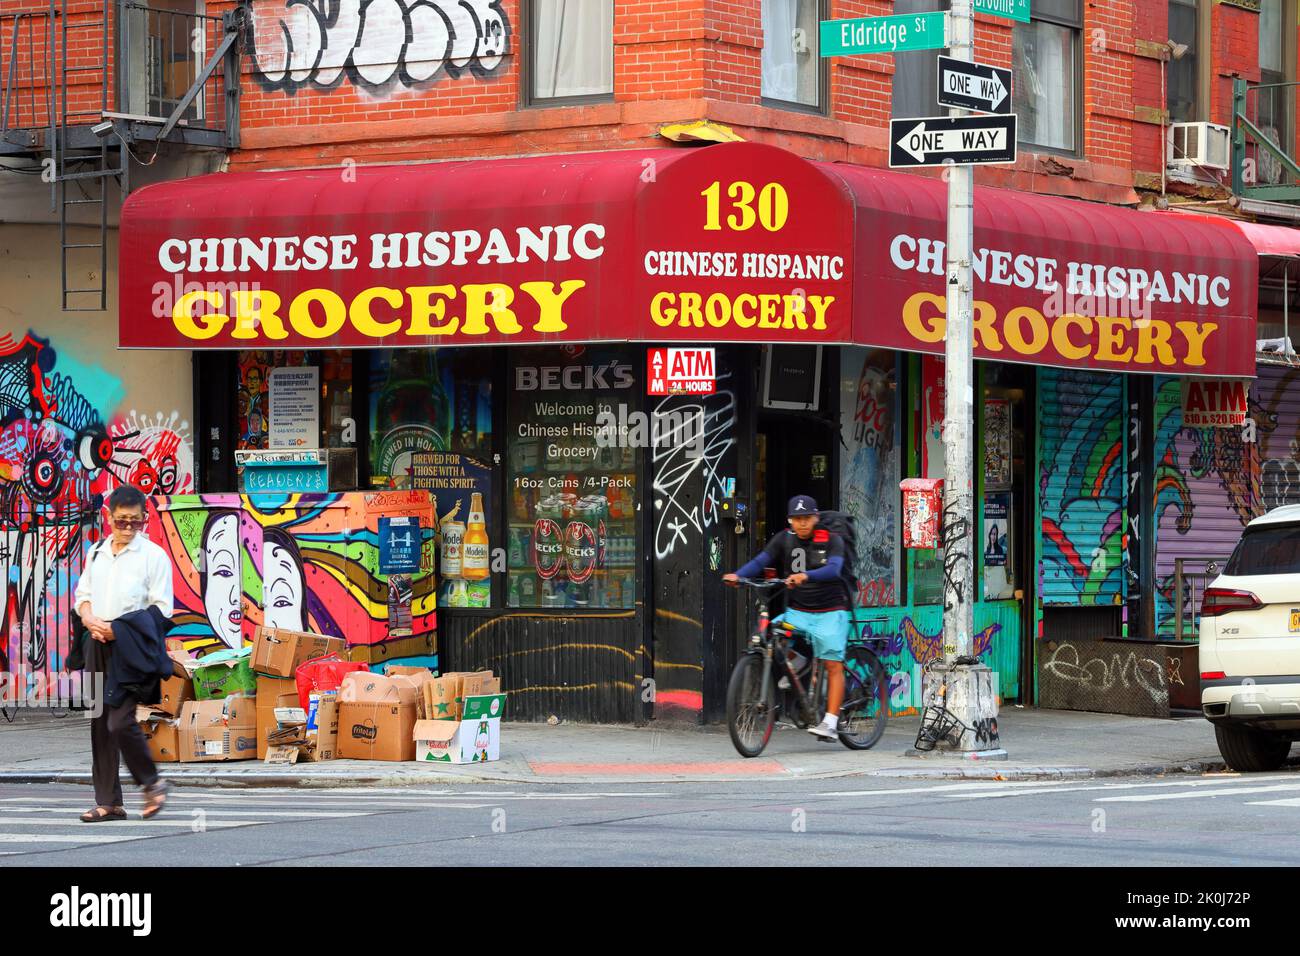 Chinesisches hispanischen Lebensmittelgeschäft, 130 Eldridge St, New York, NYC Foto einer Bodega in Manhattans Lower East Side/Chinatown Stockfoto